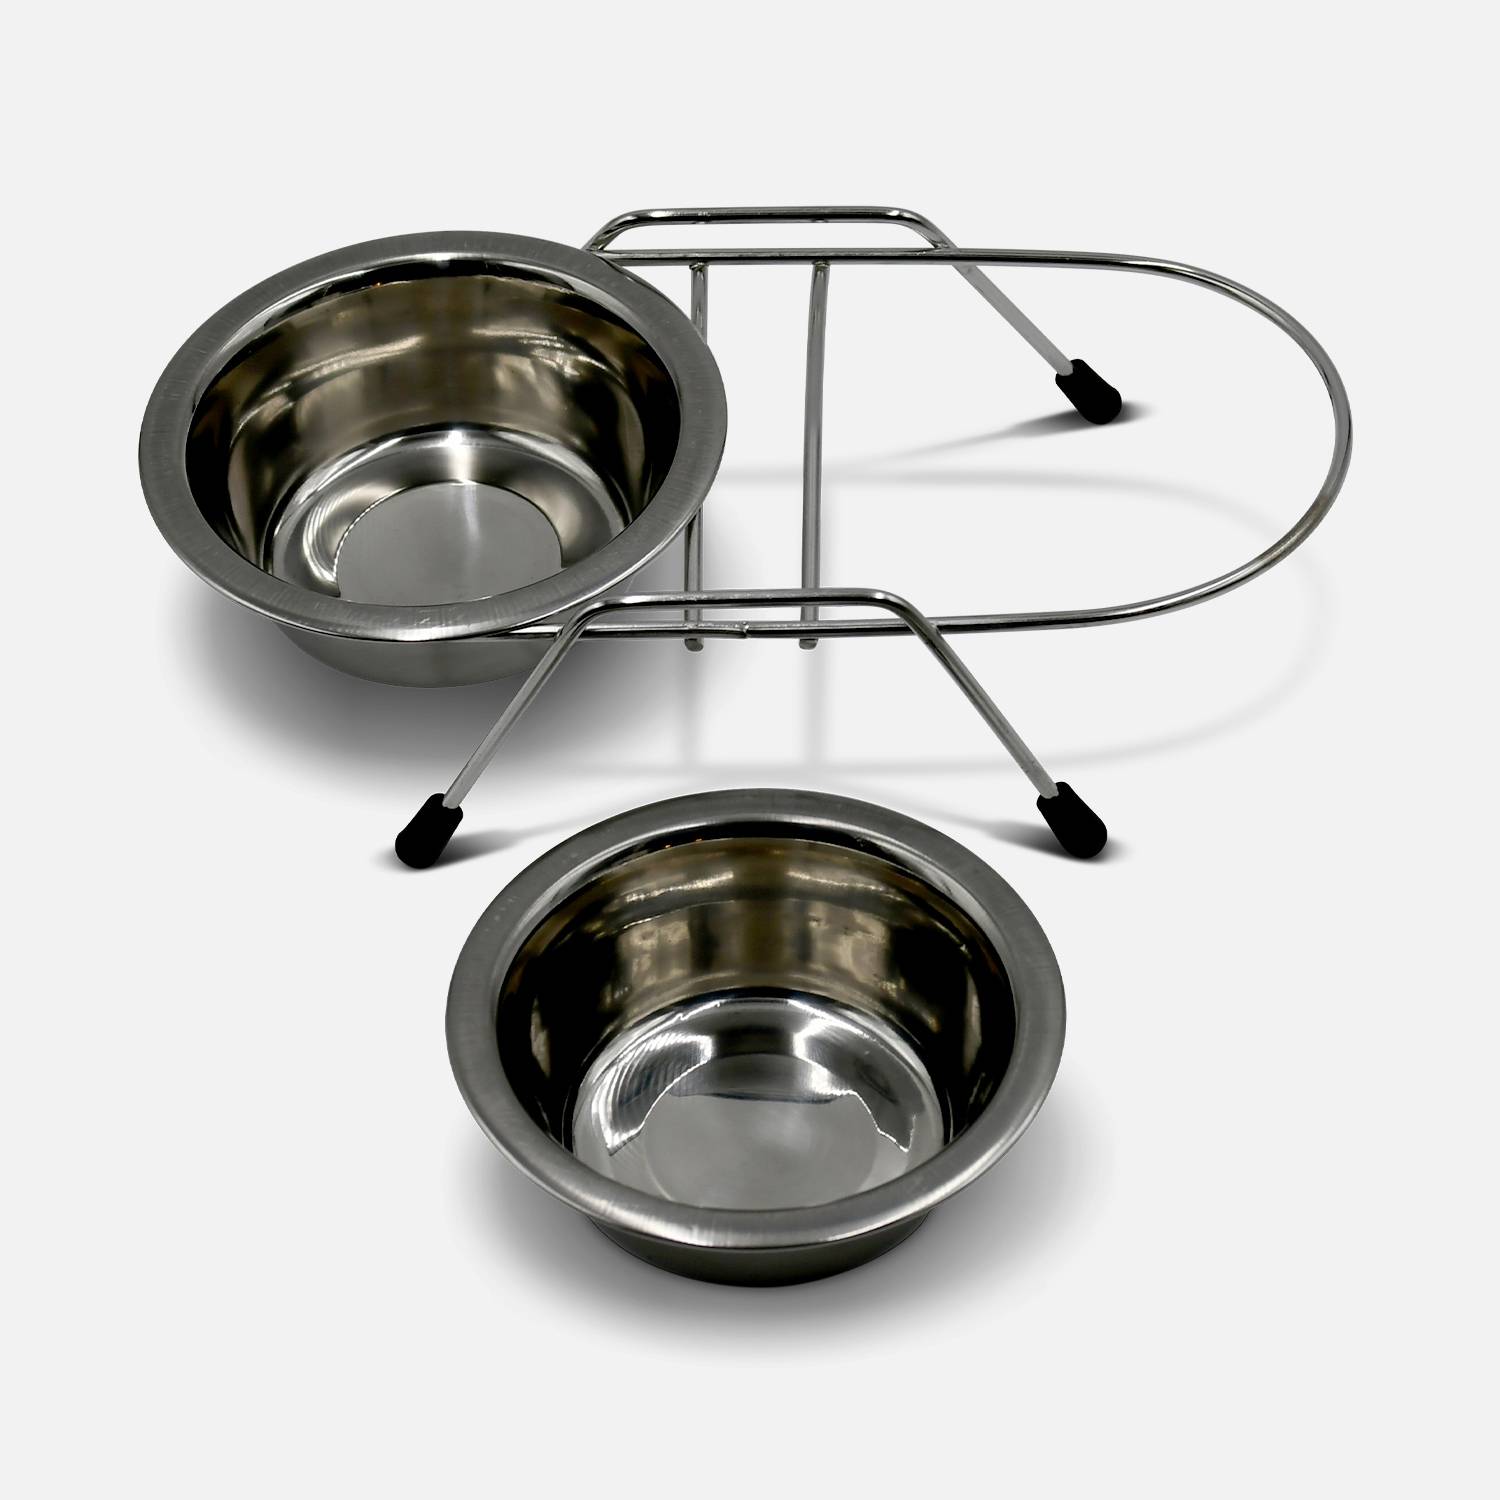 Roestvrijstalen dubbele voederbak en steun, diameter 11 cm, voor kleine honden of katten, maat S, gripvaste rubberen poten Photo3